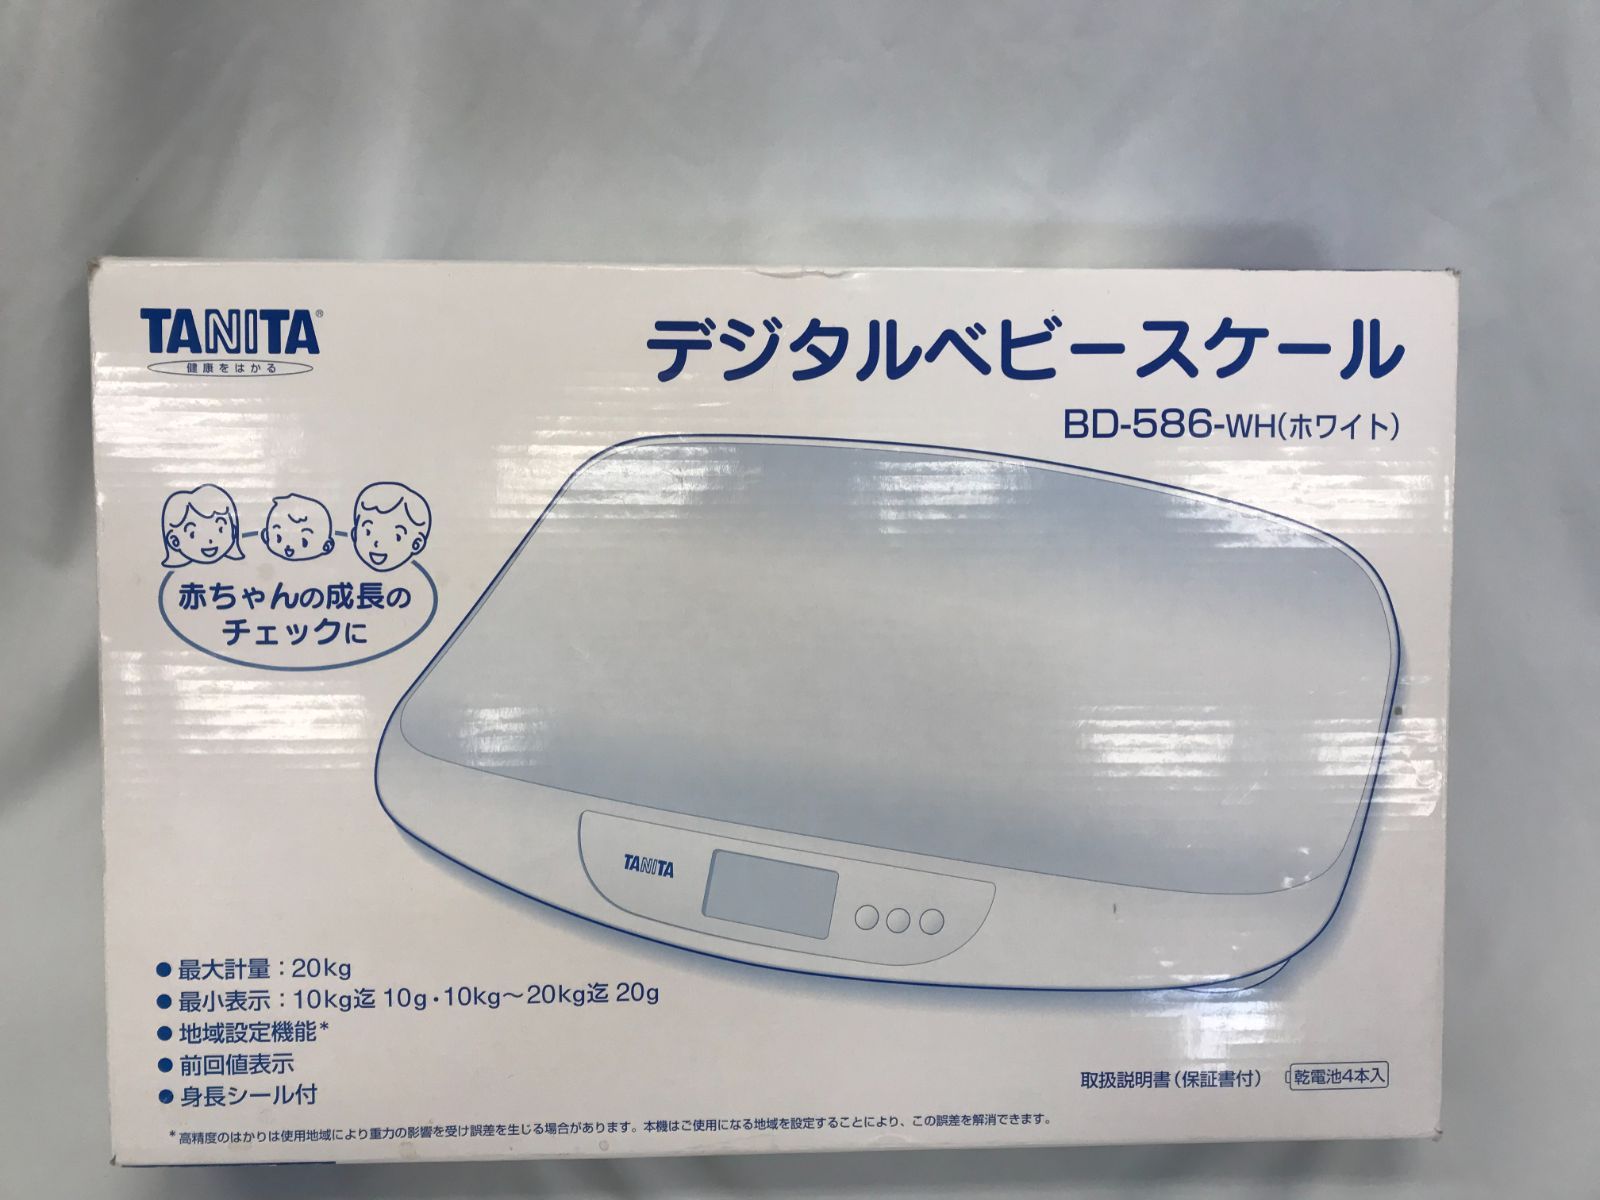 タニタ デジタルベビースケール BD-586-WH(ホワイト) - 寝具